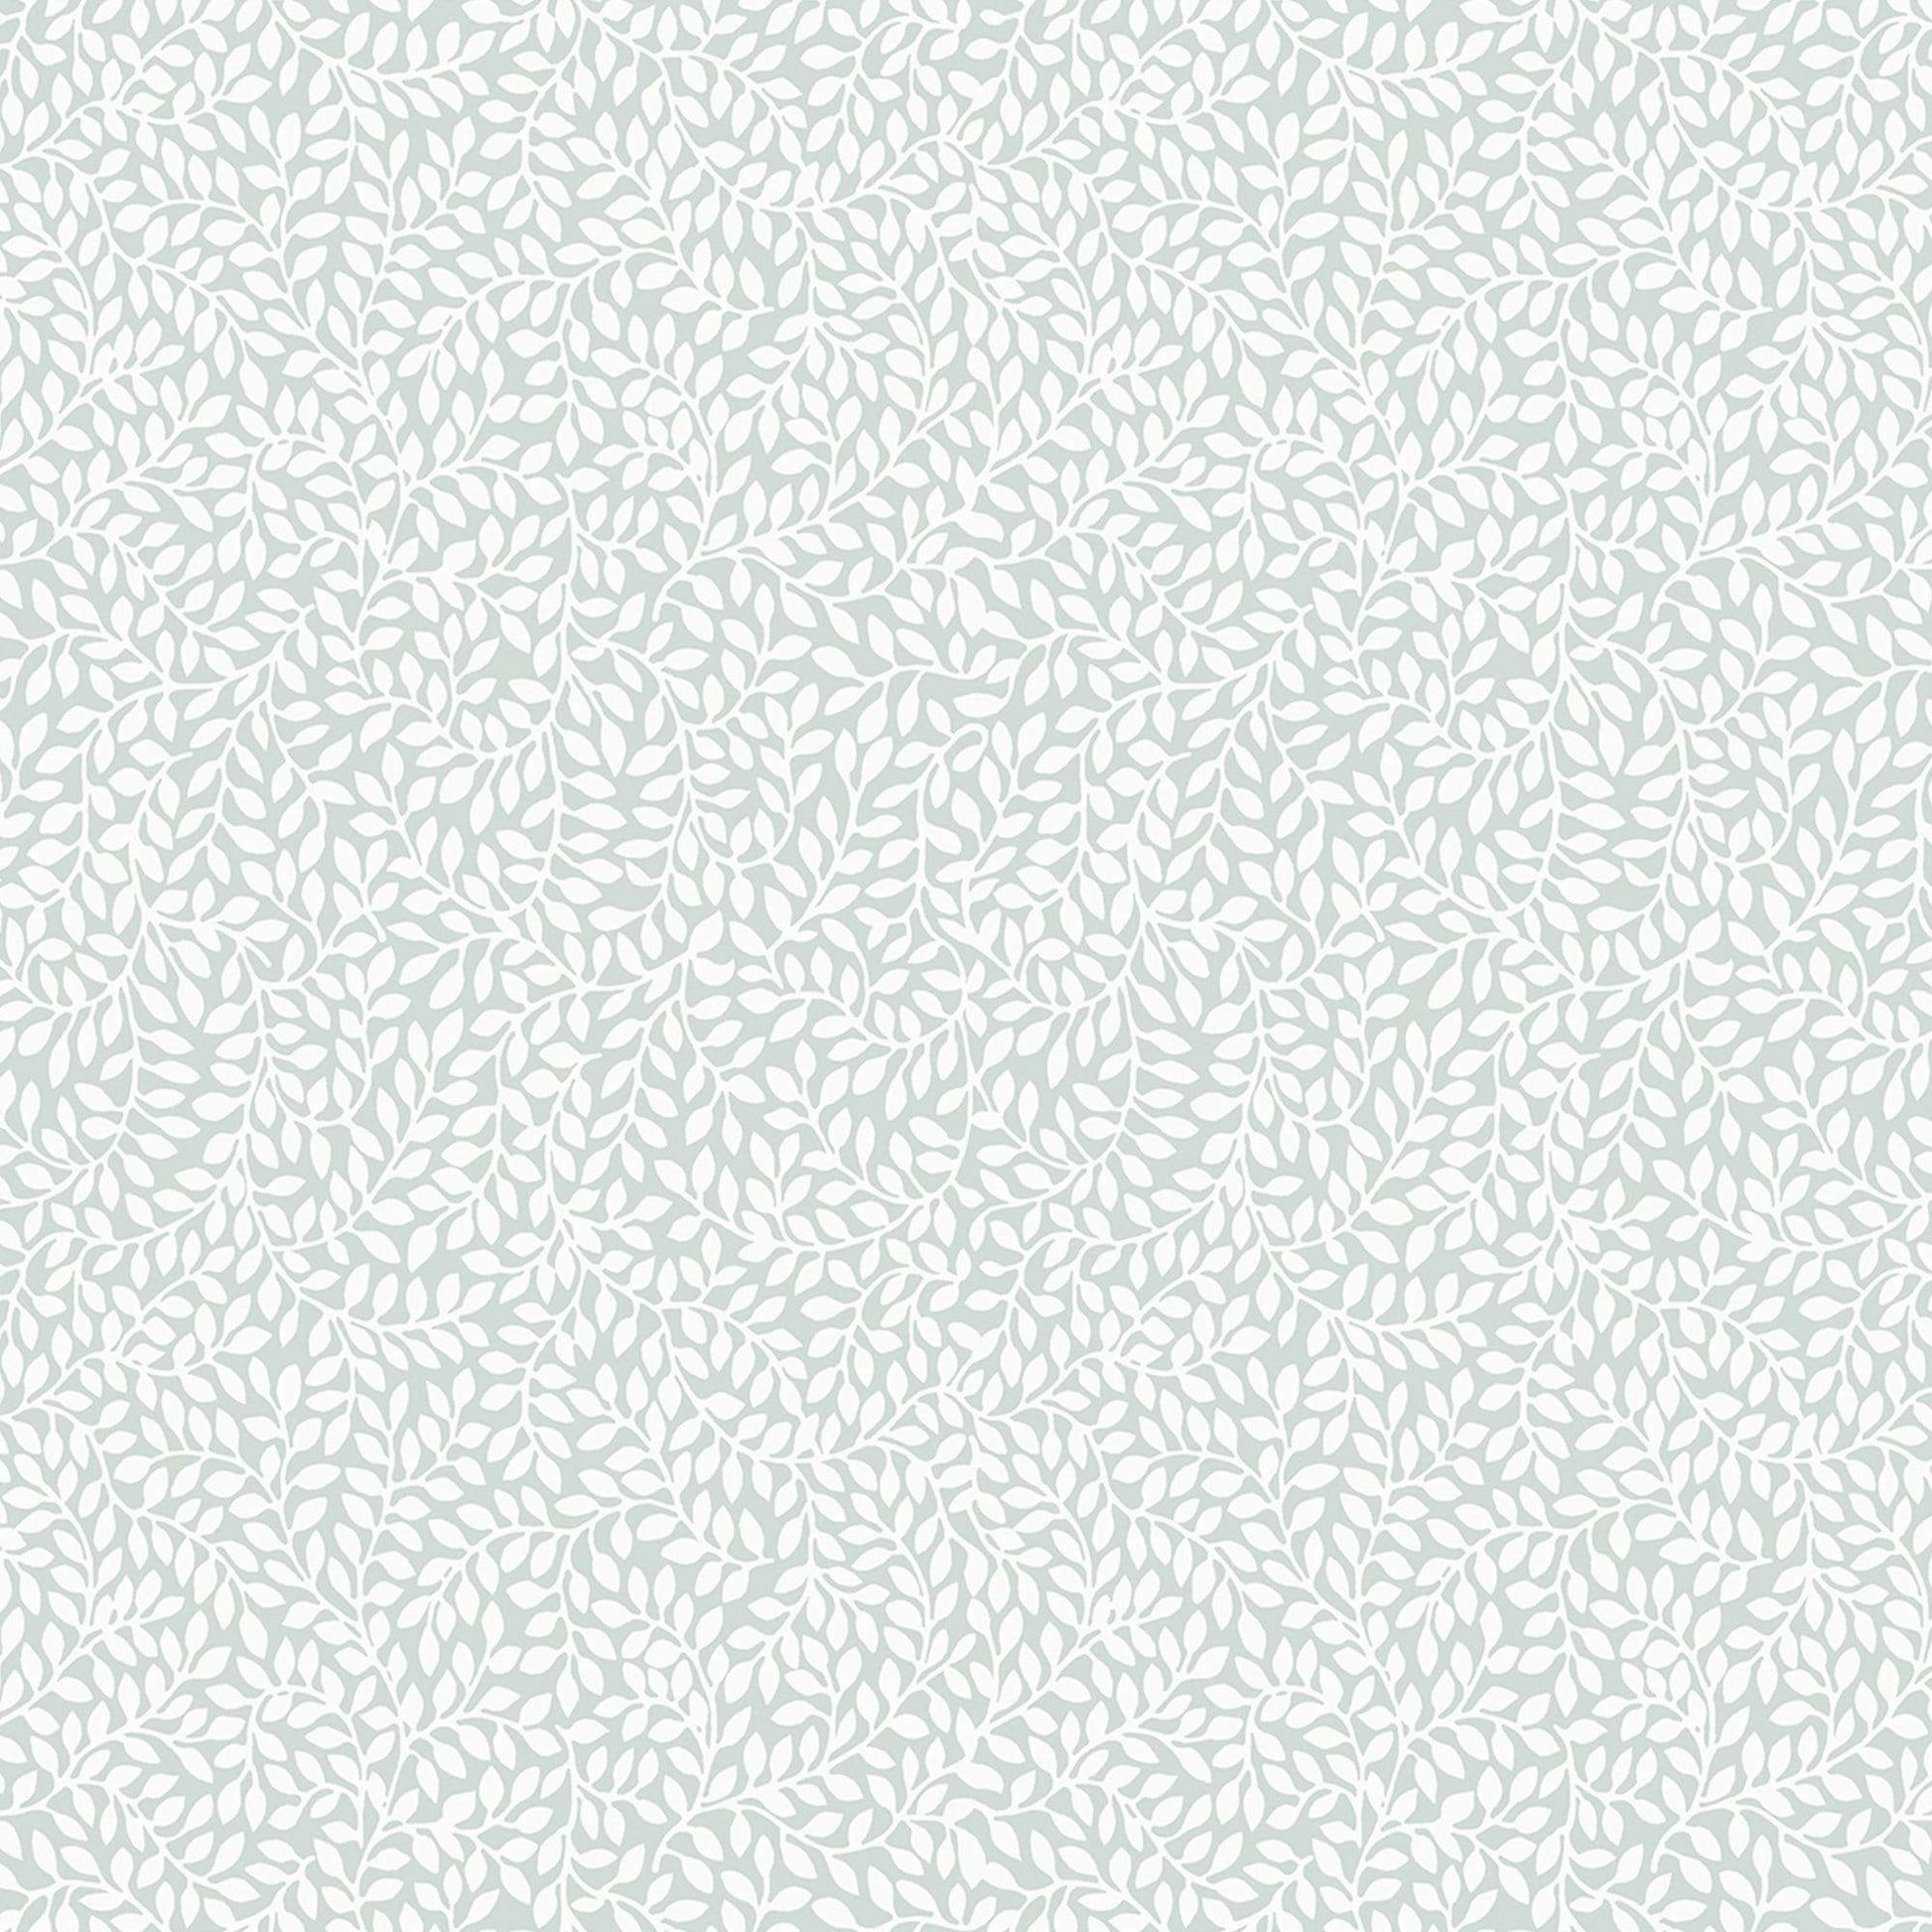 Wallpaper  -  Laura Ashley Little Vines Duck Egg Wallpaper - 113351  -  60001886